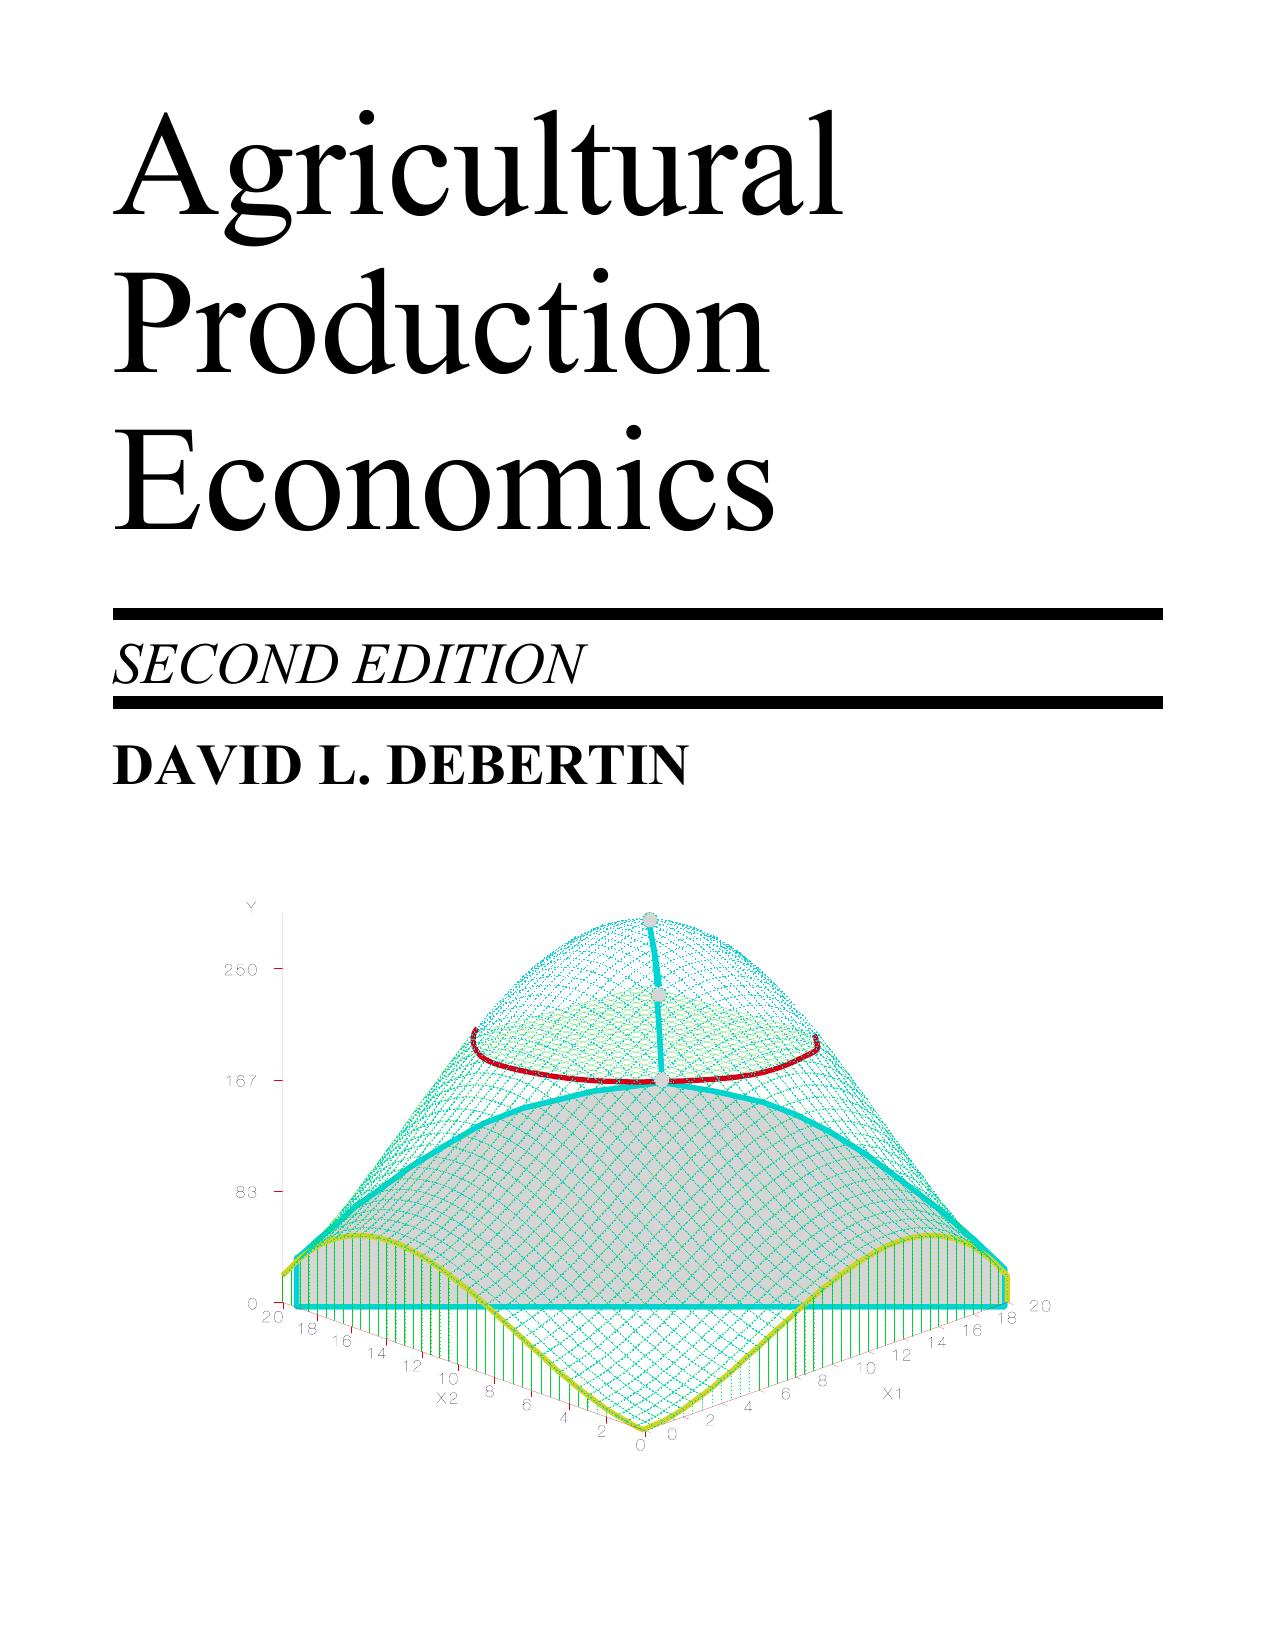 C:\Ag Production Economics\cover color.wpd